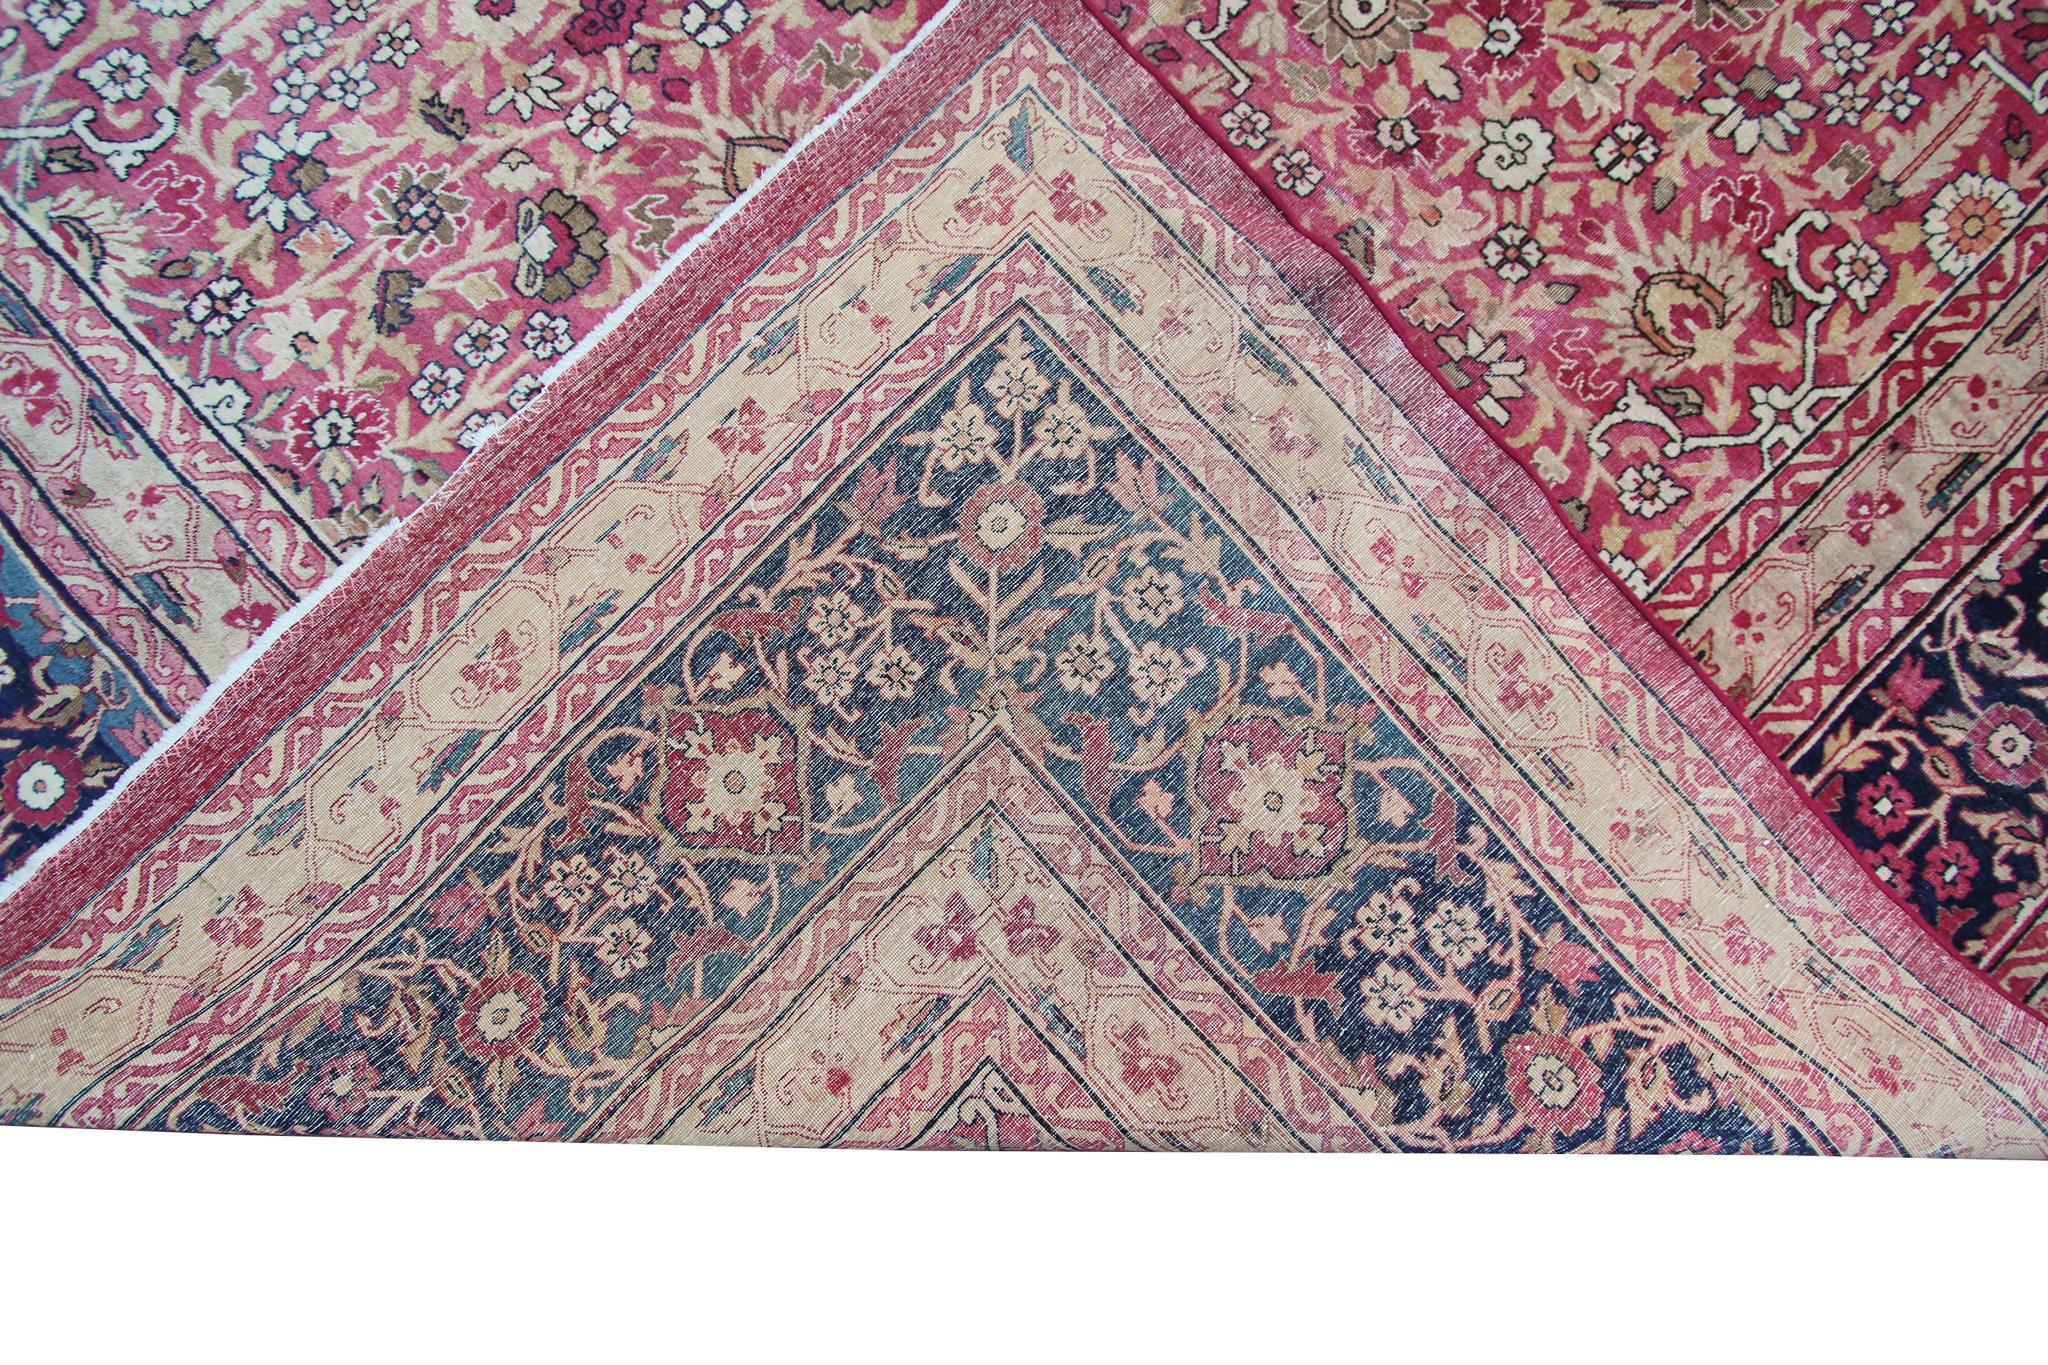 c1870 Pink Antique Lavar Kermanshah Fine Geometric Rug 11x17ft 138cm x 519cm For Sale 8